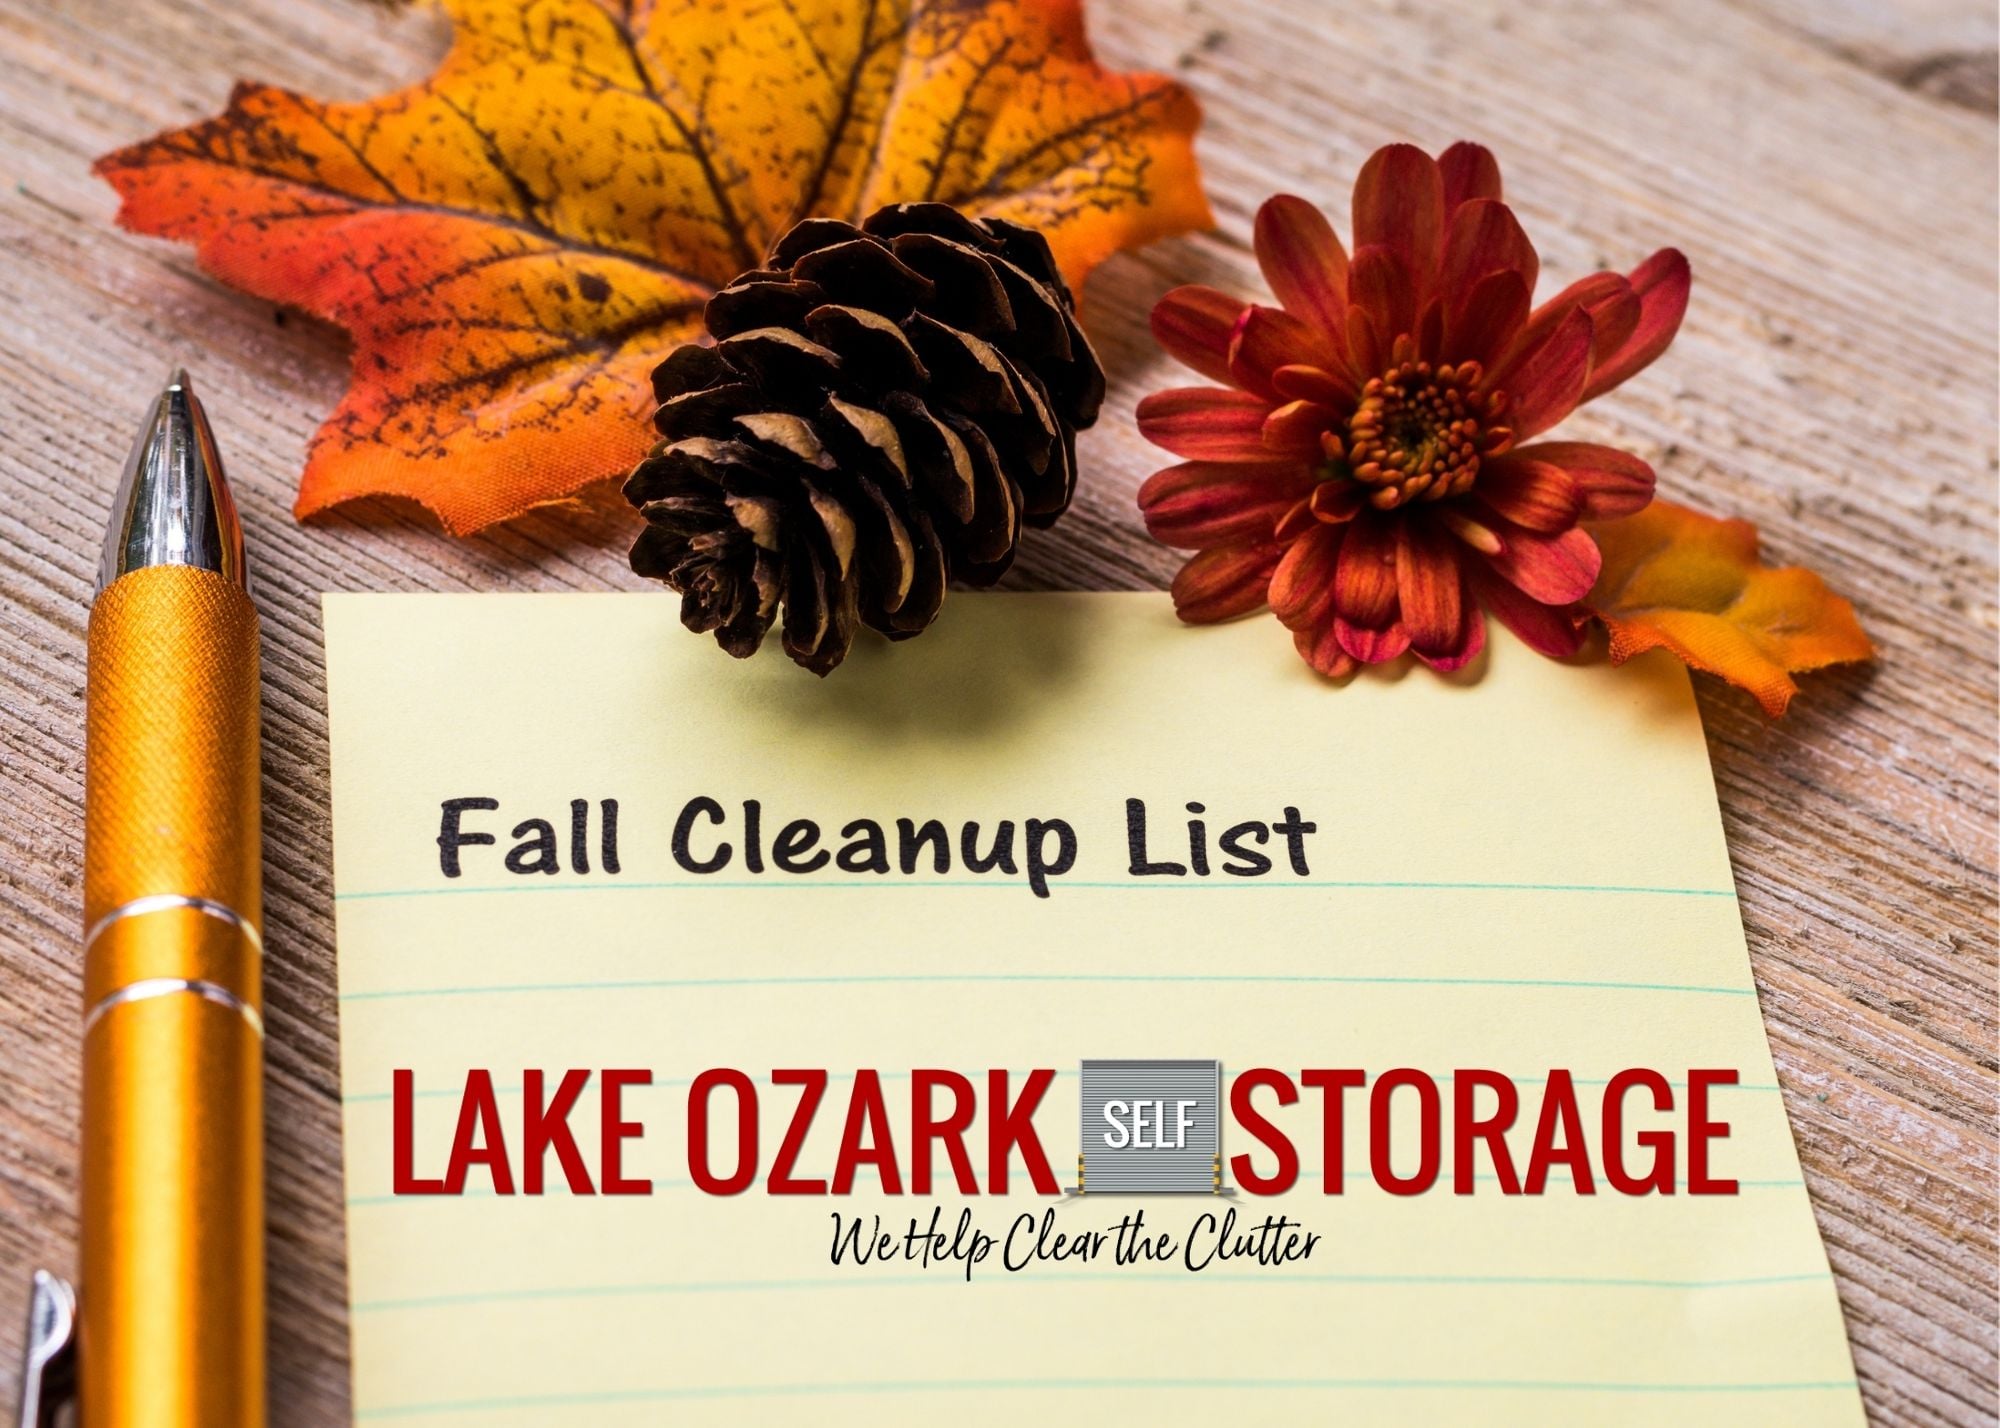 Lake Ozark Self Storage